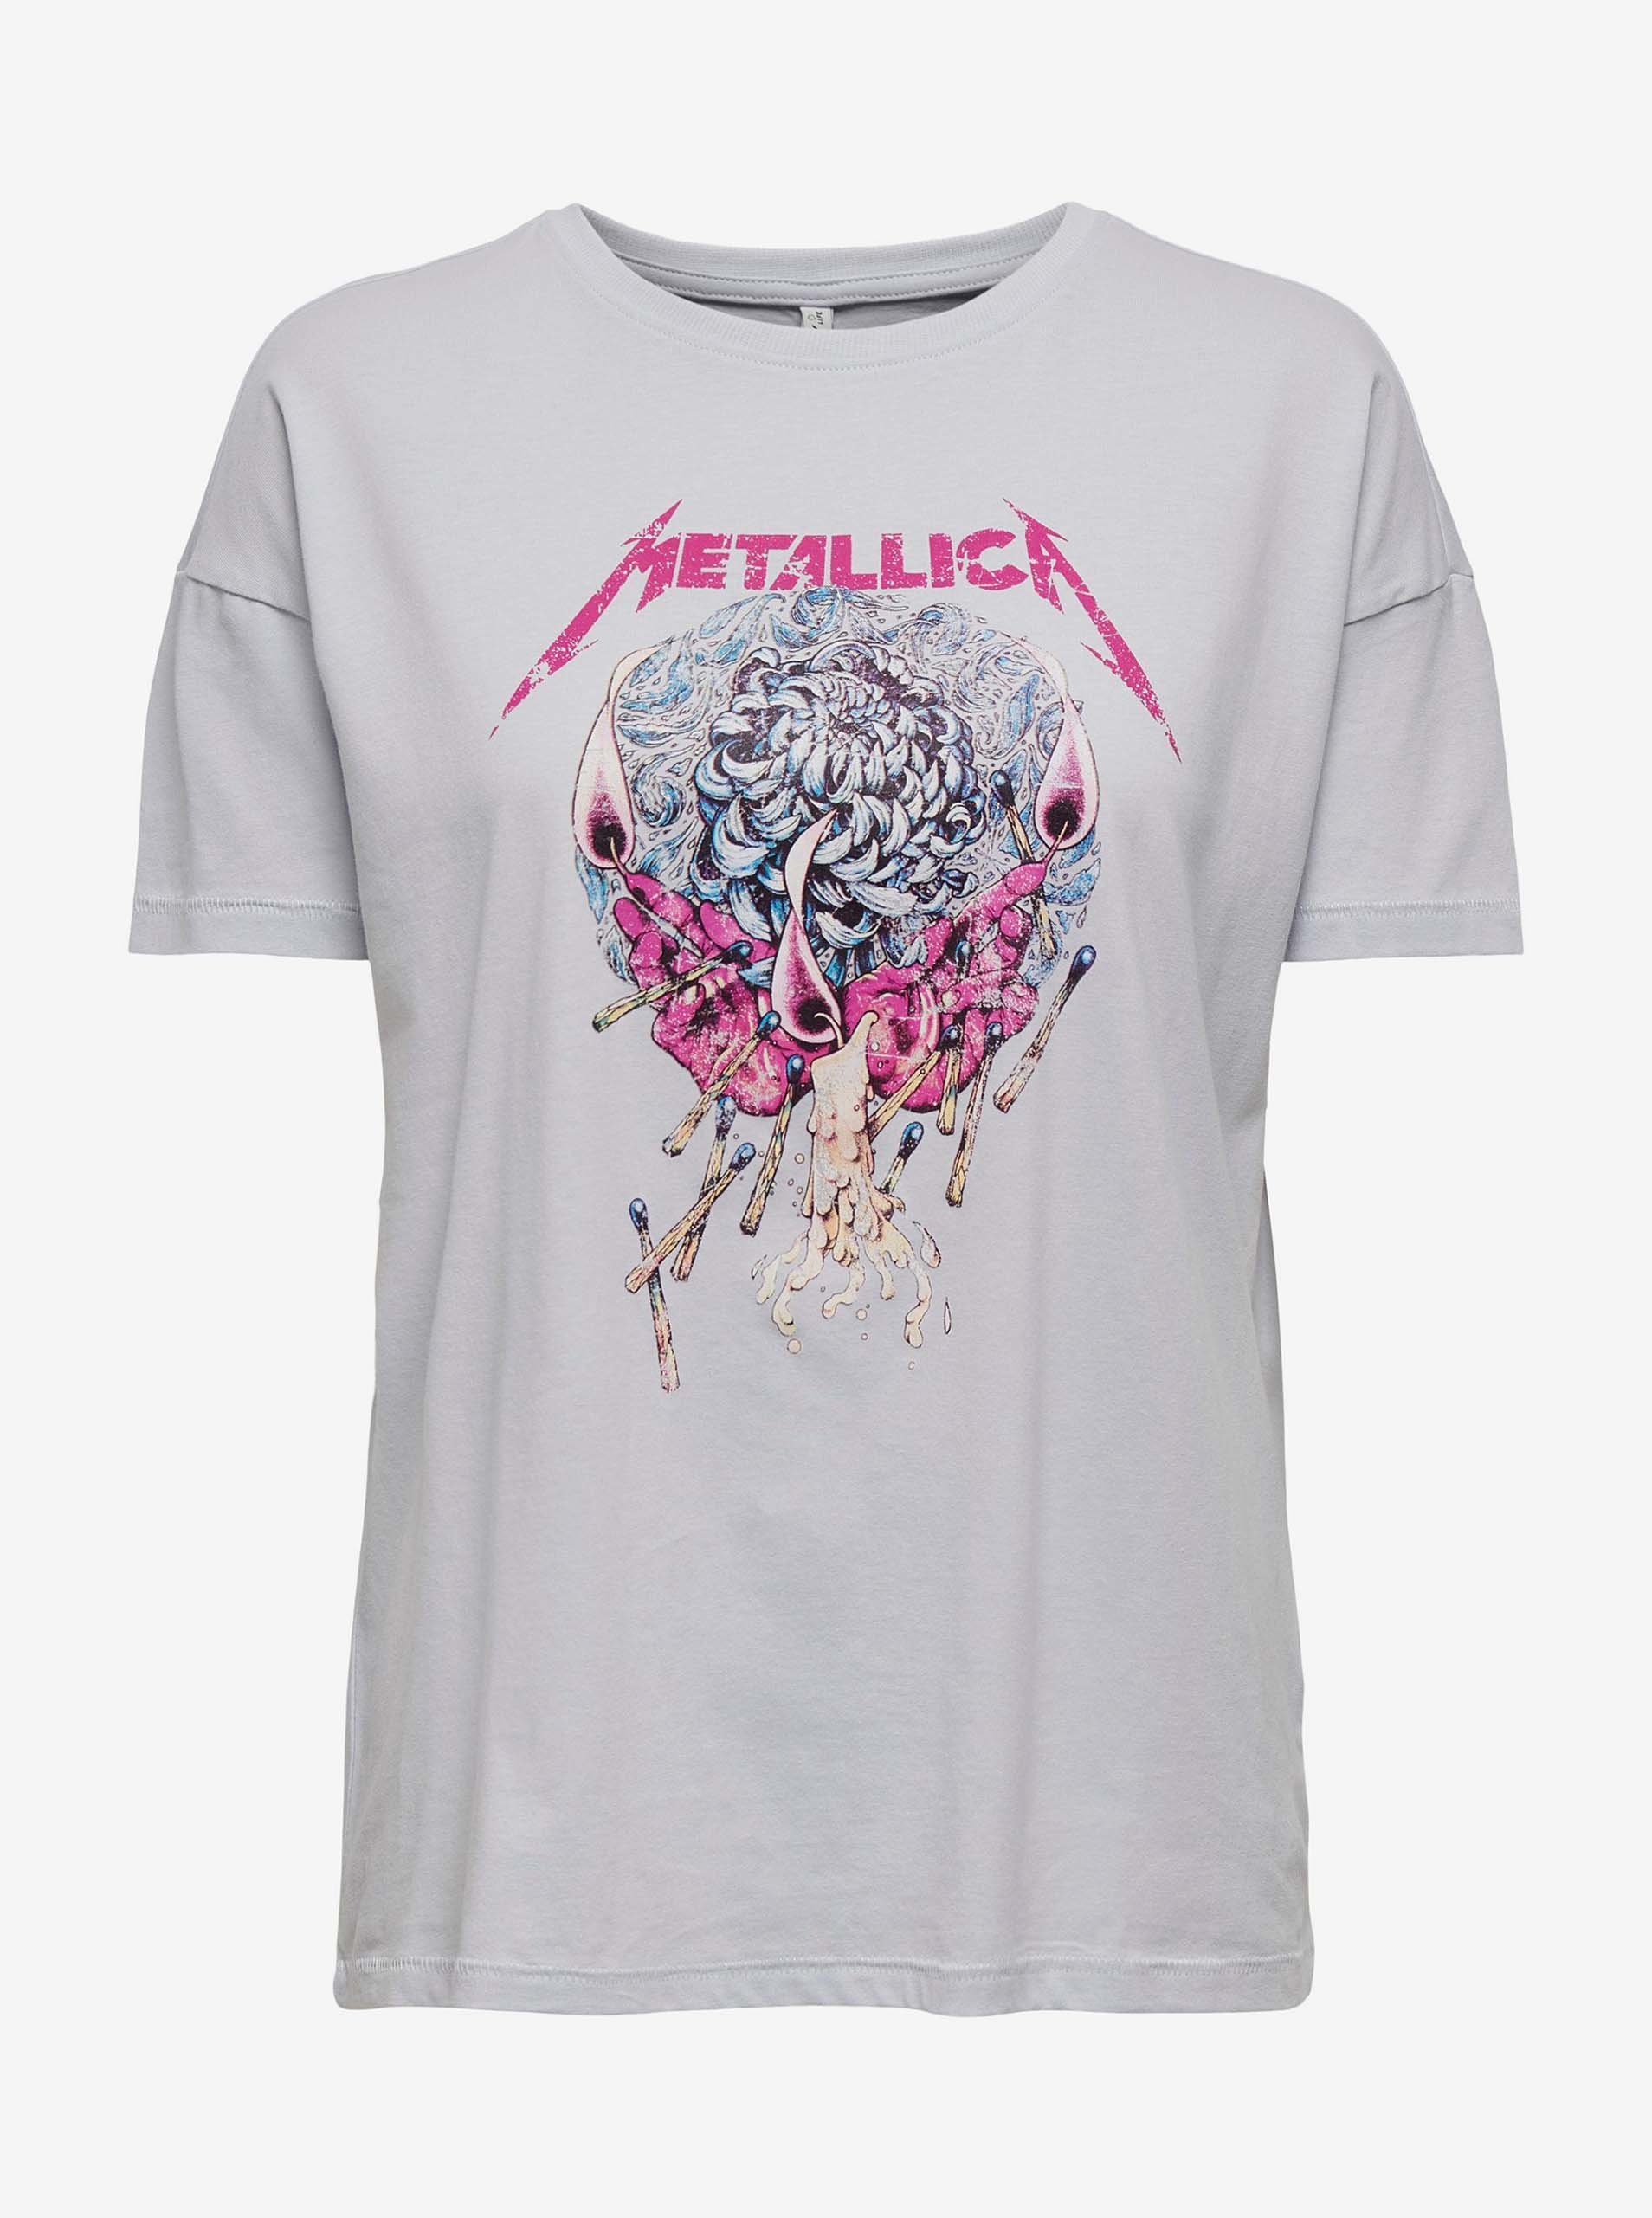 Damen-T-Shirt Only Metallica